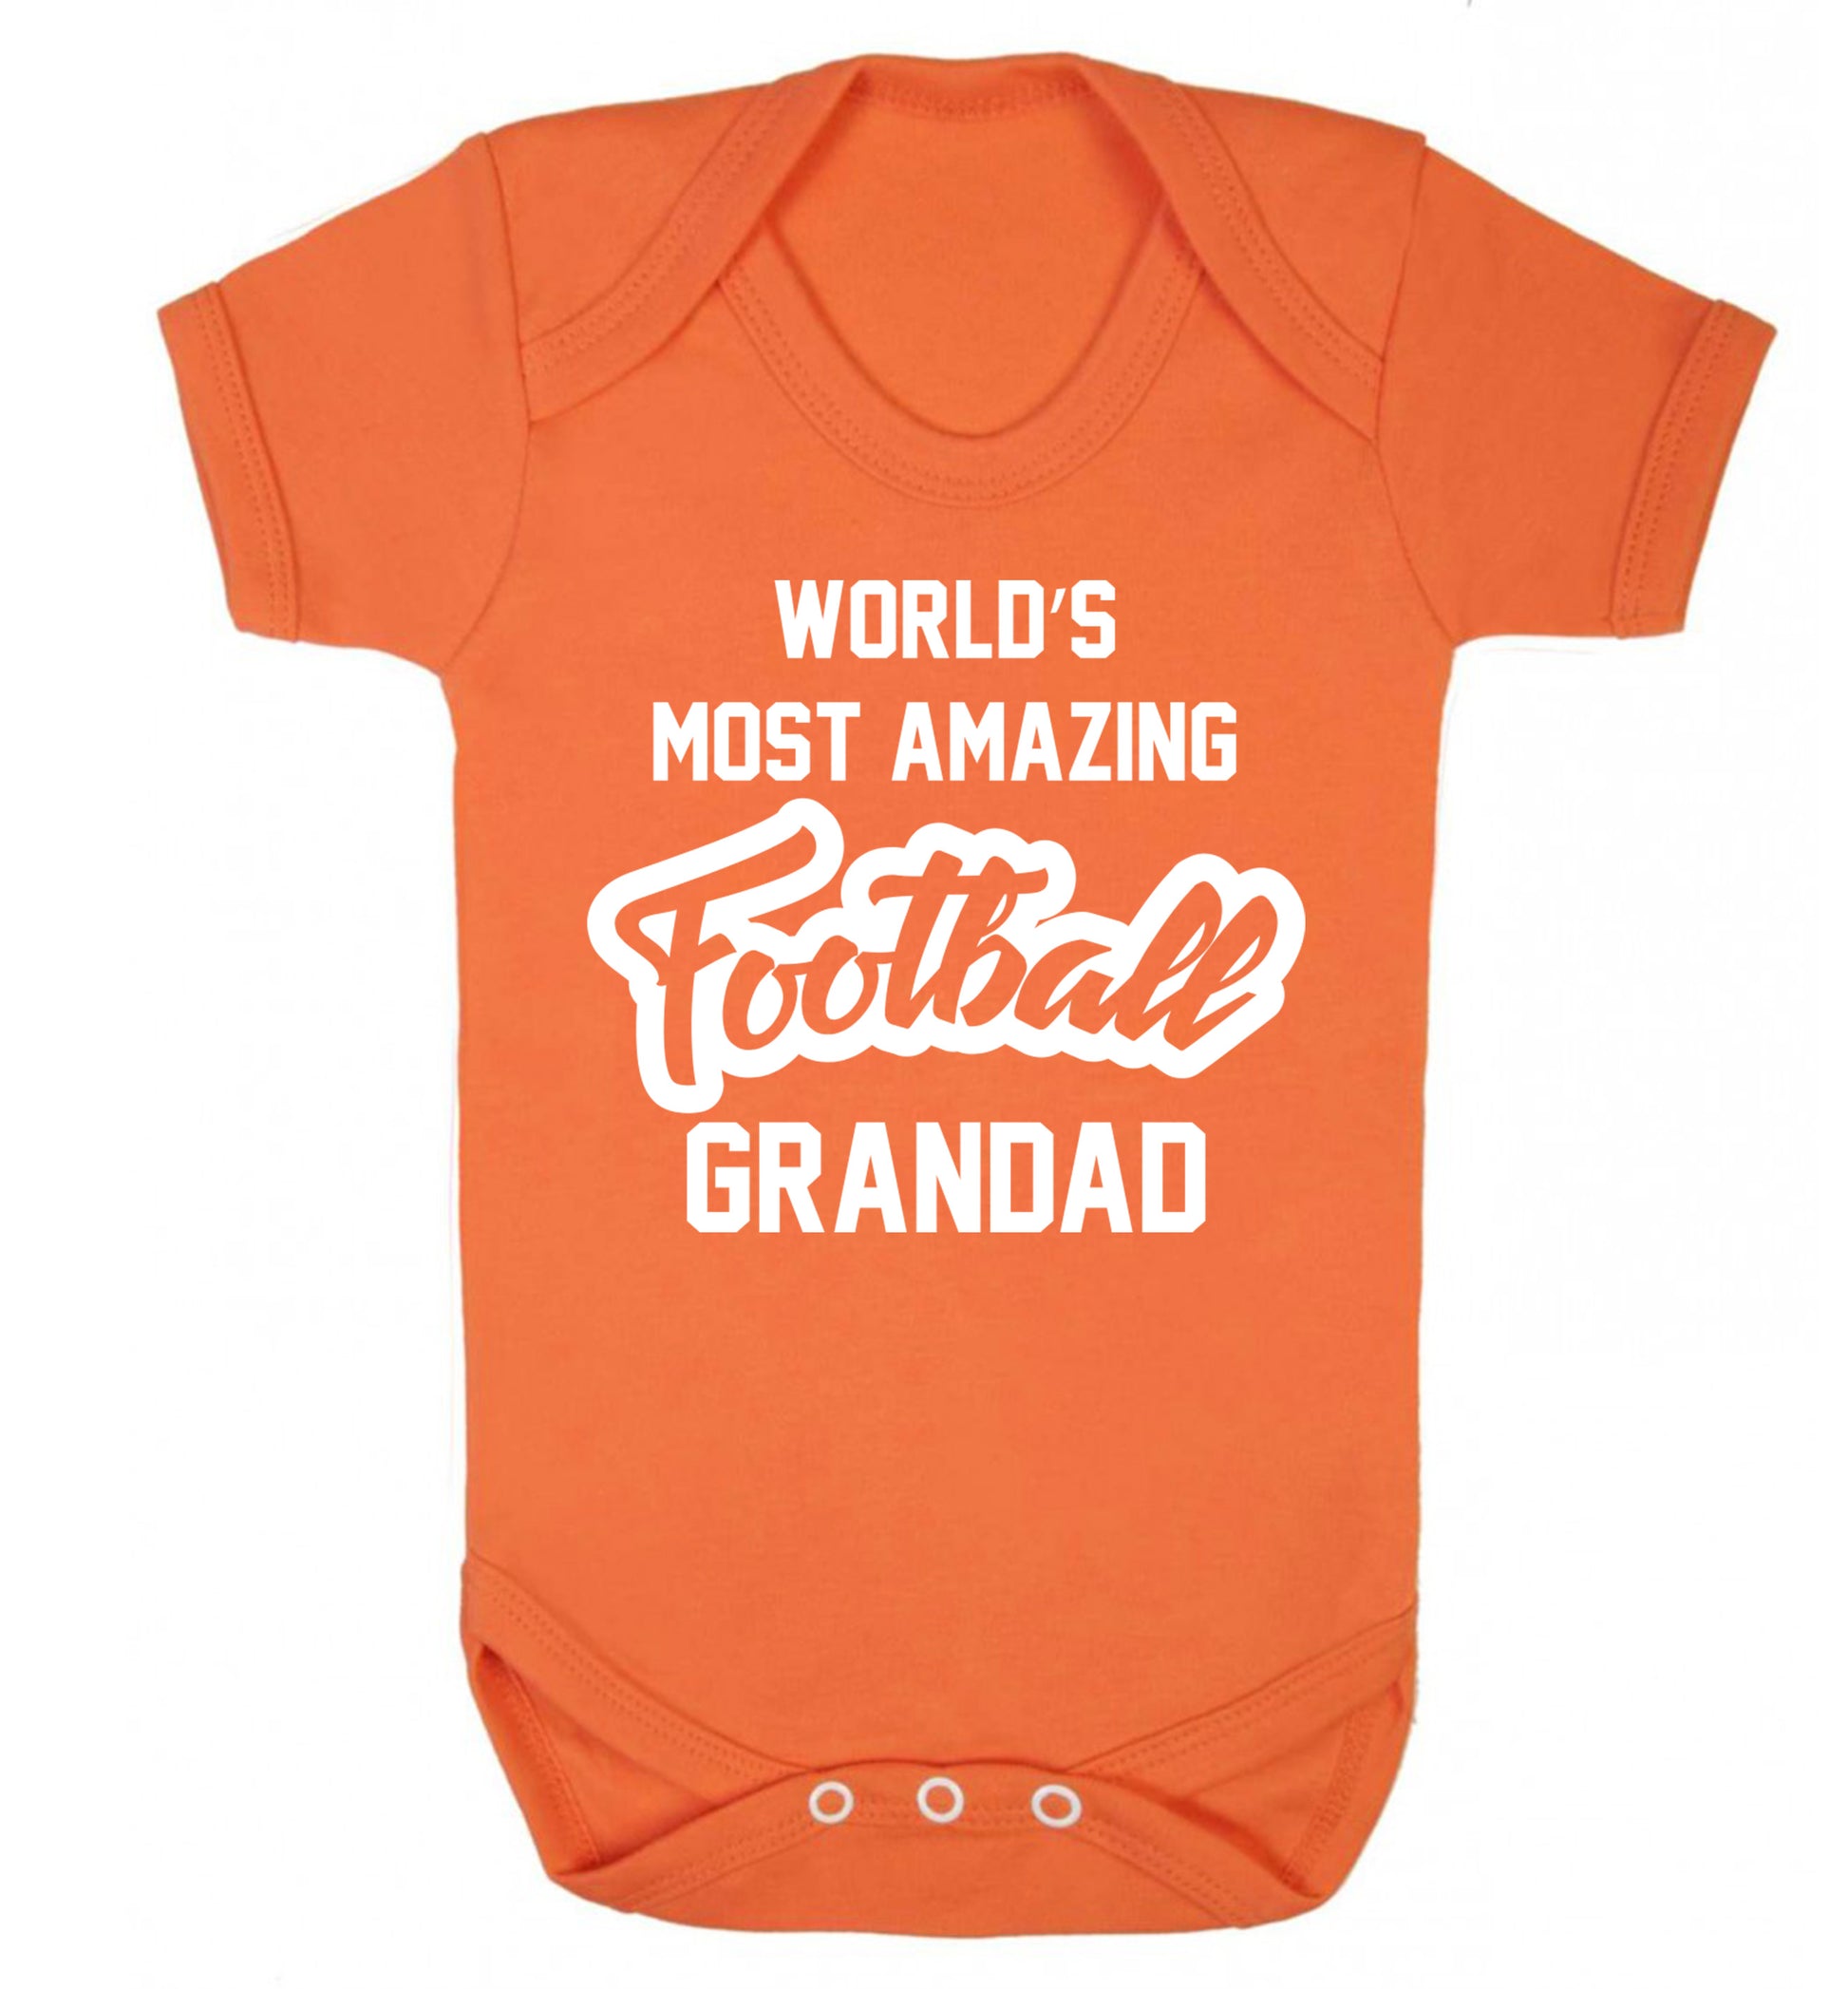 Worlds most amazing football grandad Baby Vest orange 18-24 months